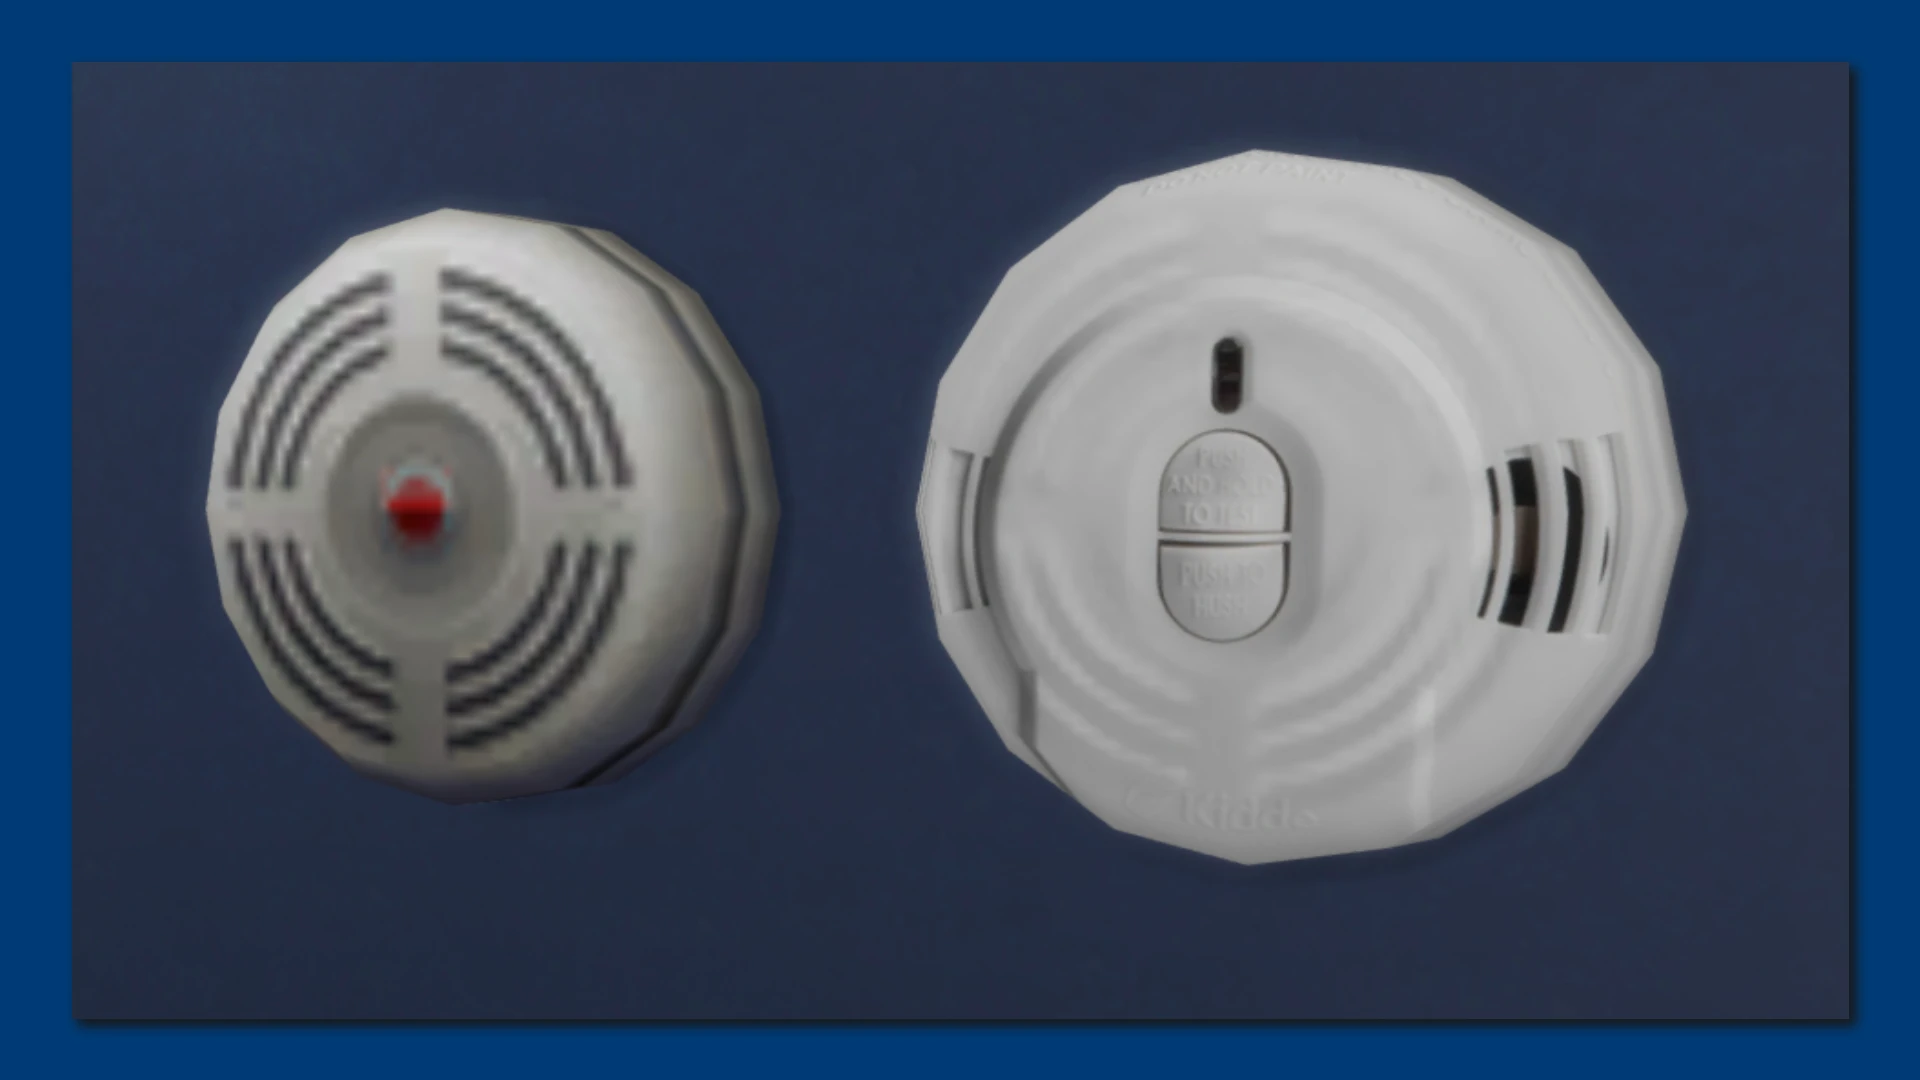 sims 4 smoke alarm mod